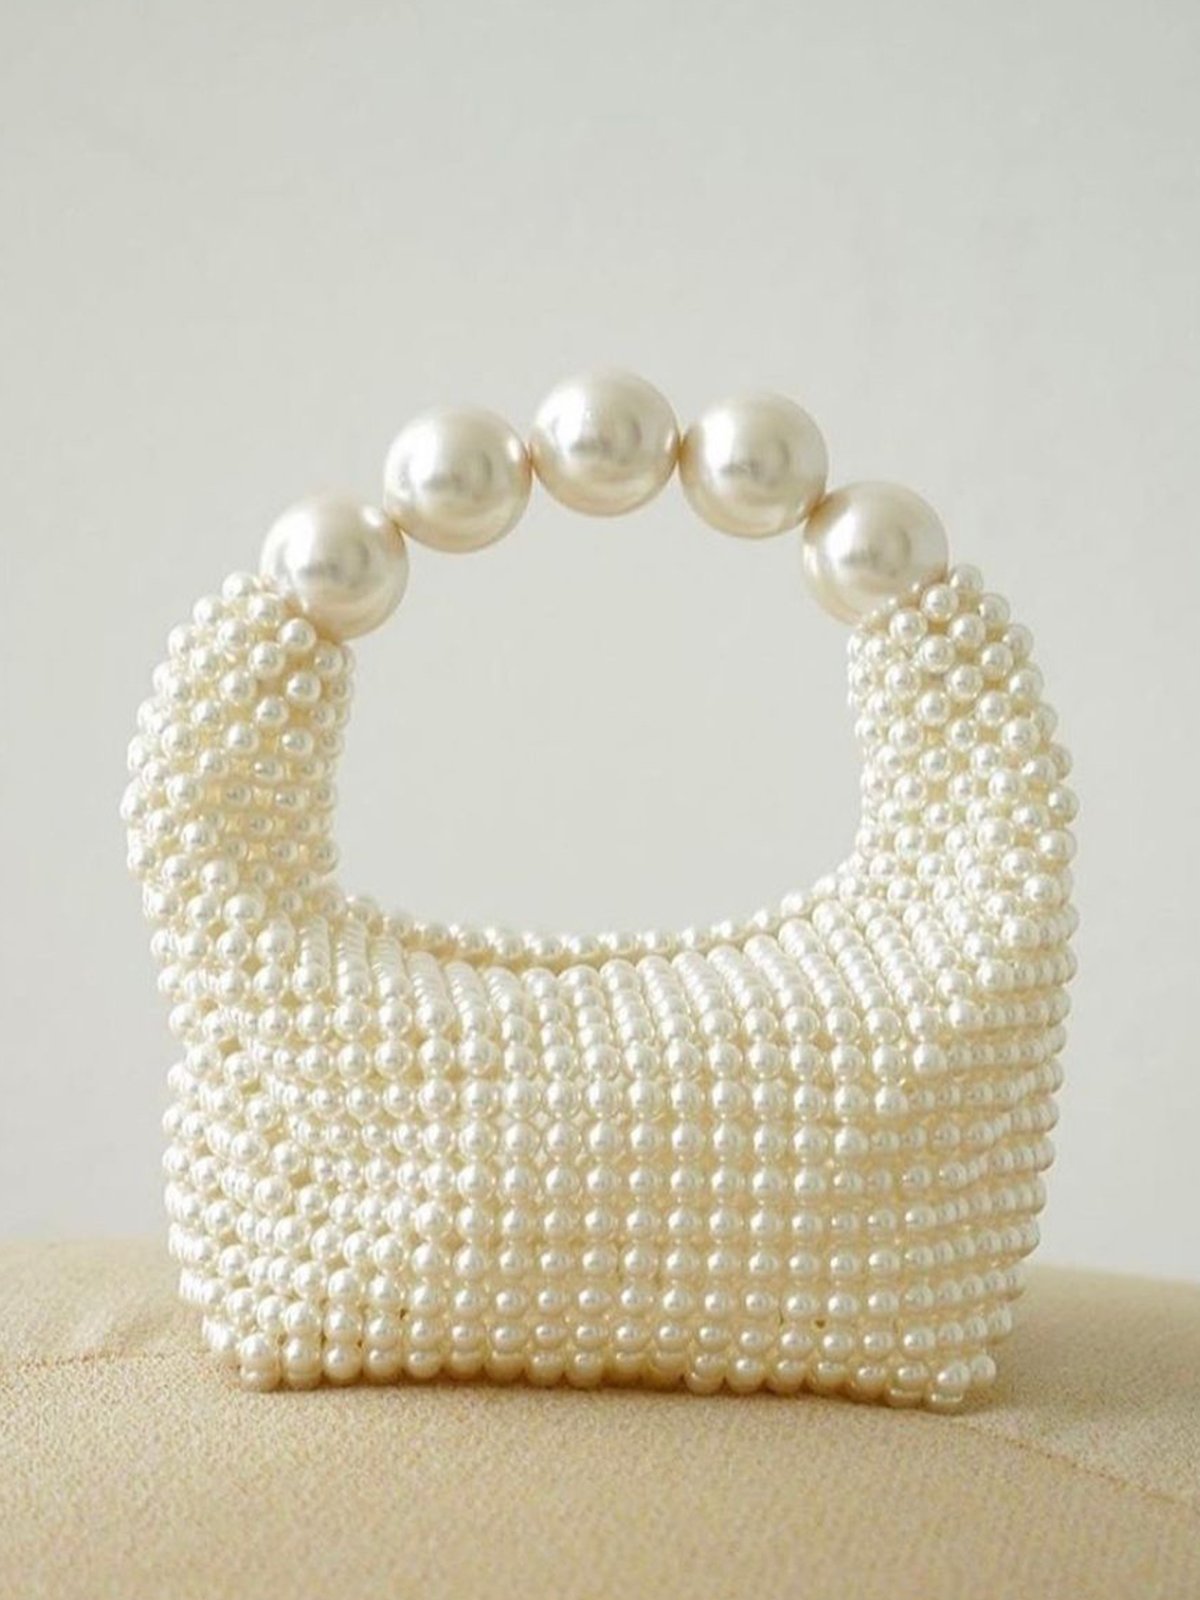 Elegant Nachgemachte Perlen Abend Handtasche Perlen Kupplung Tasche für Hochzeit Party